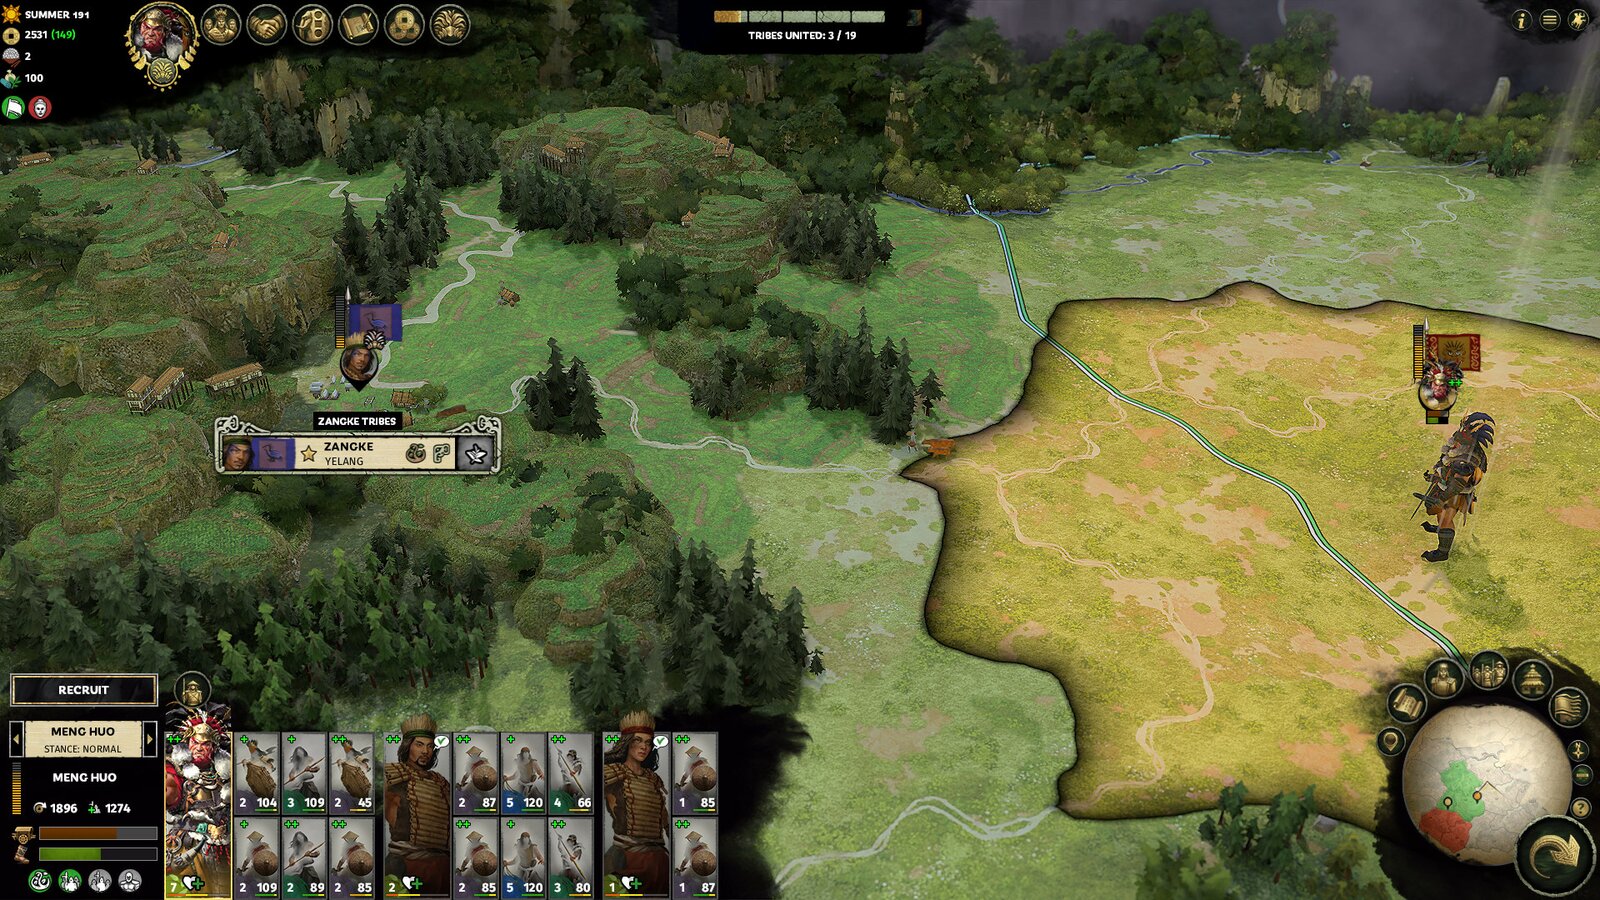 Total War: Three Kingdoms - The Furious Wild